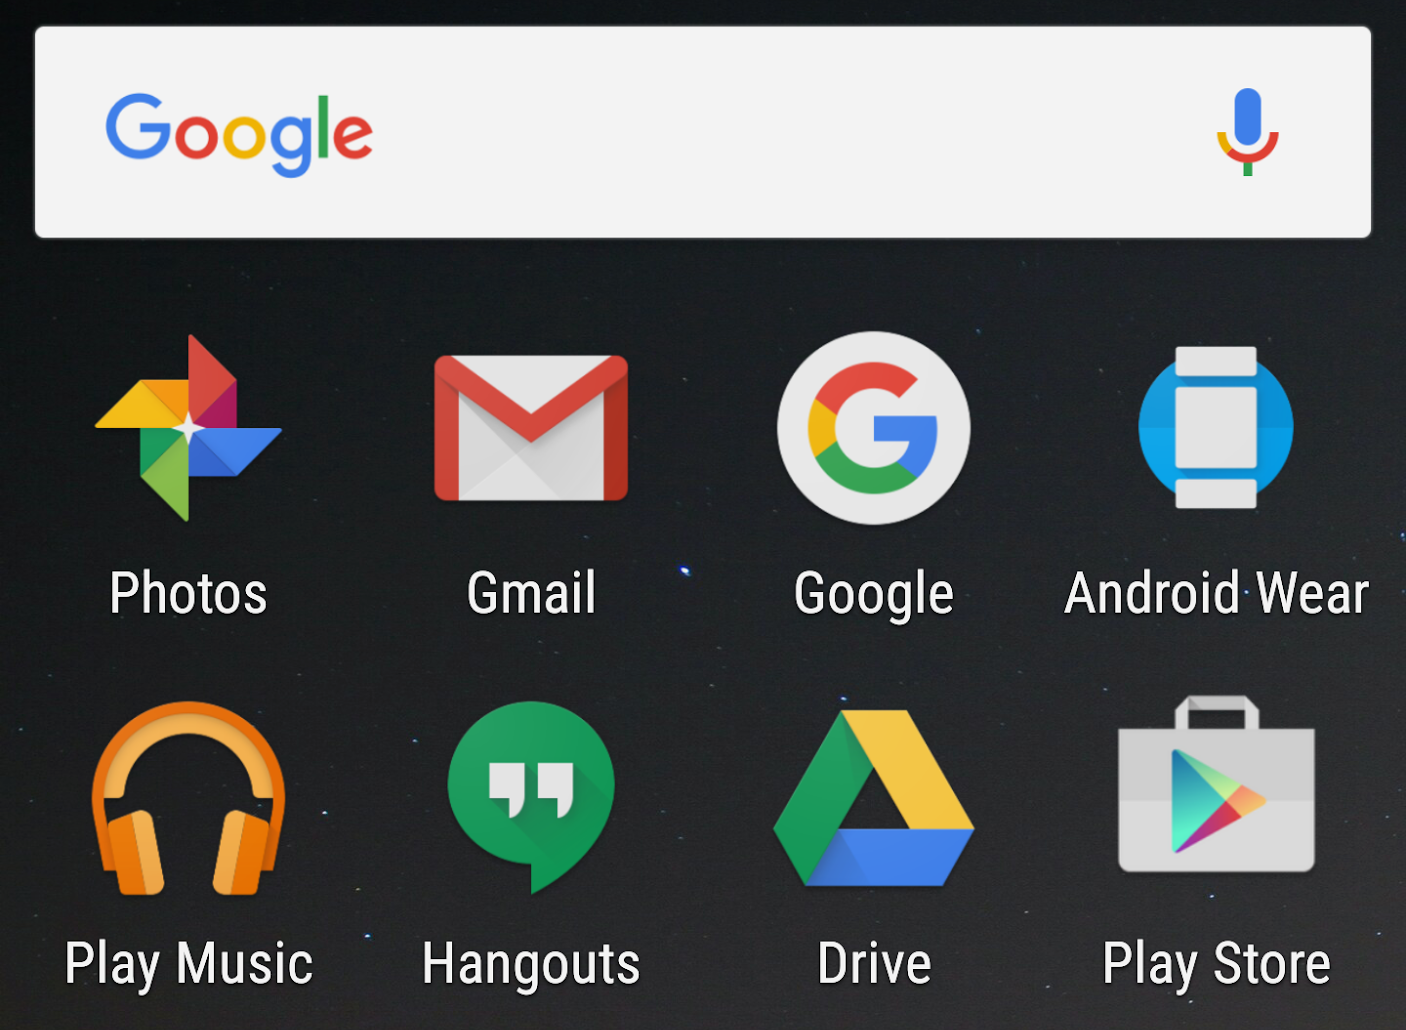 此屏幕显示运行 Android 7.0 系统映像的设备增大显示大小的效果